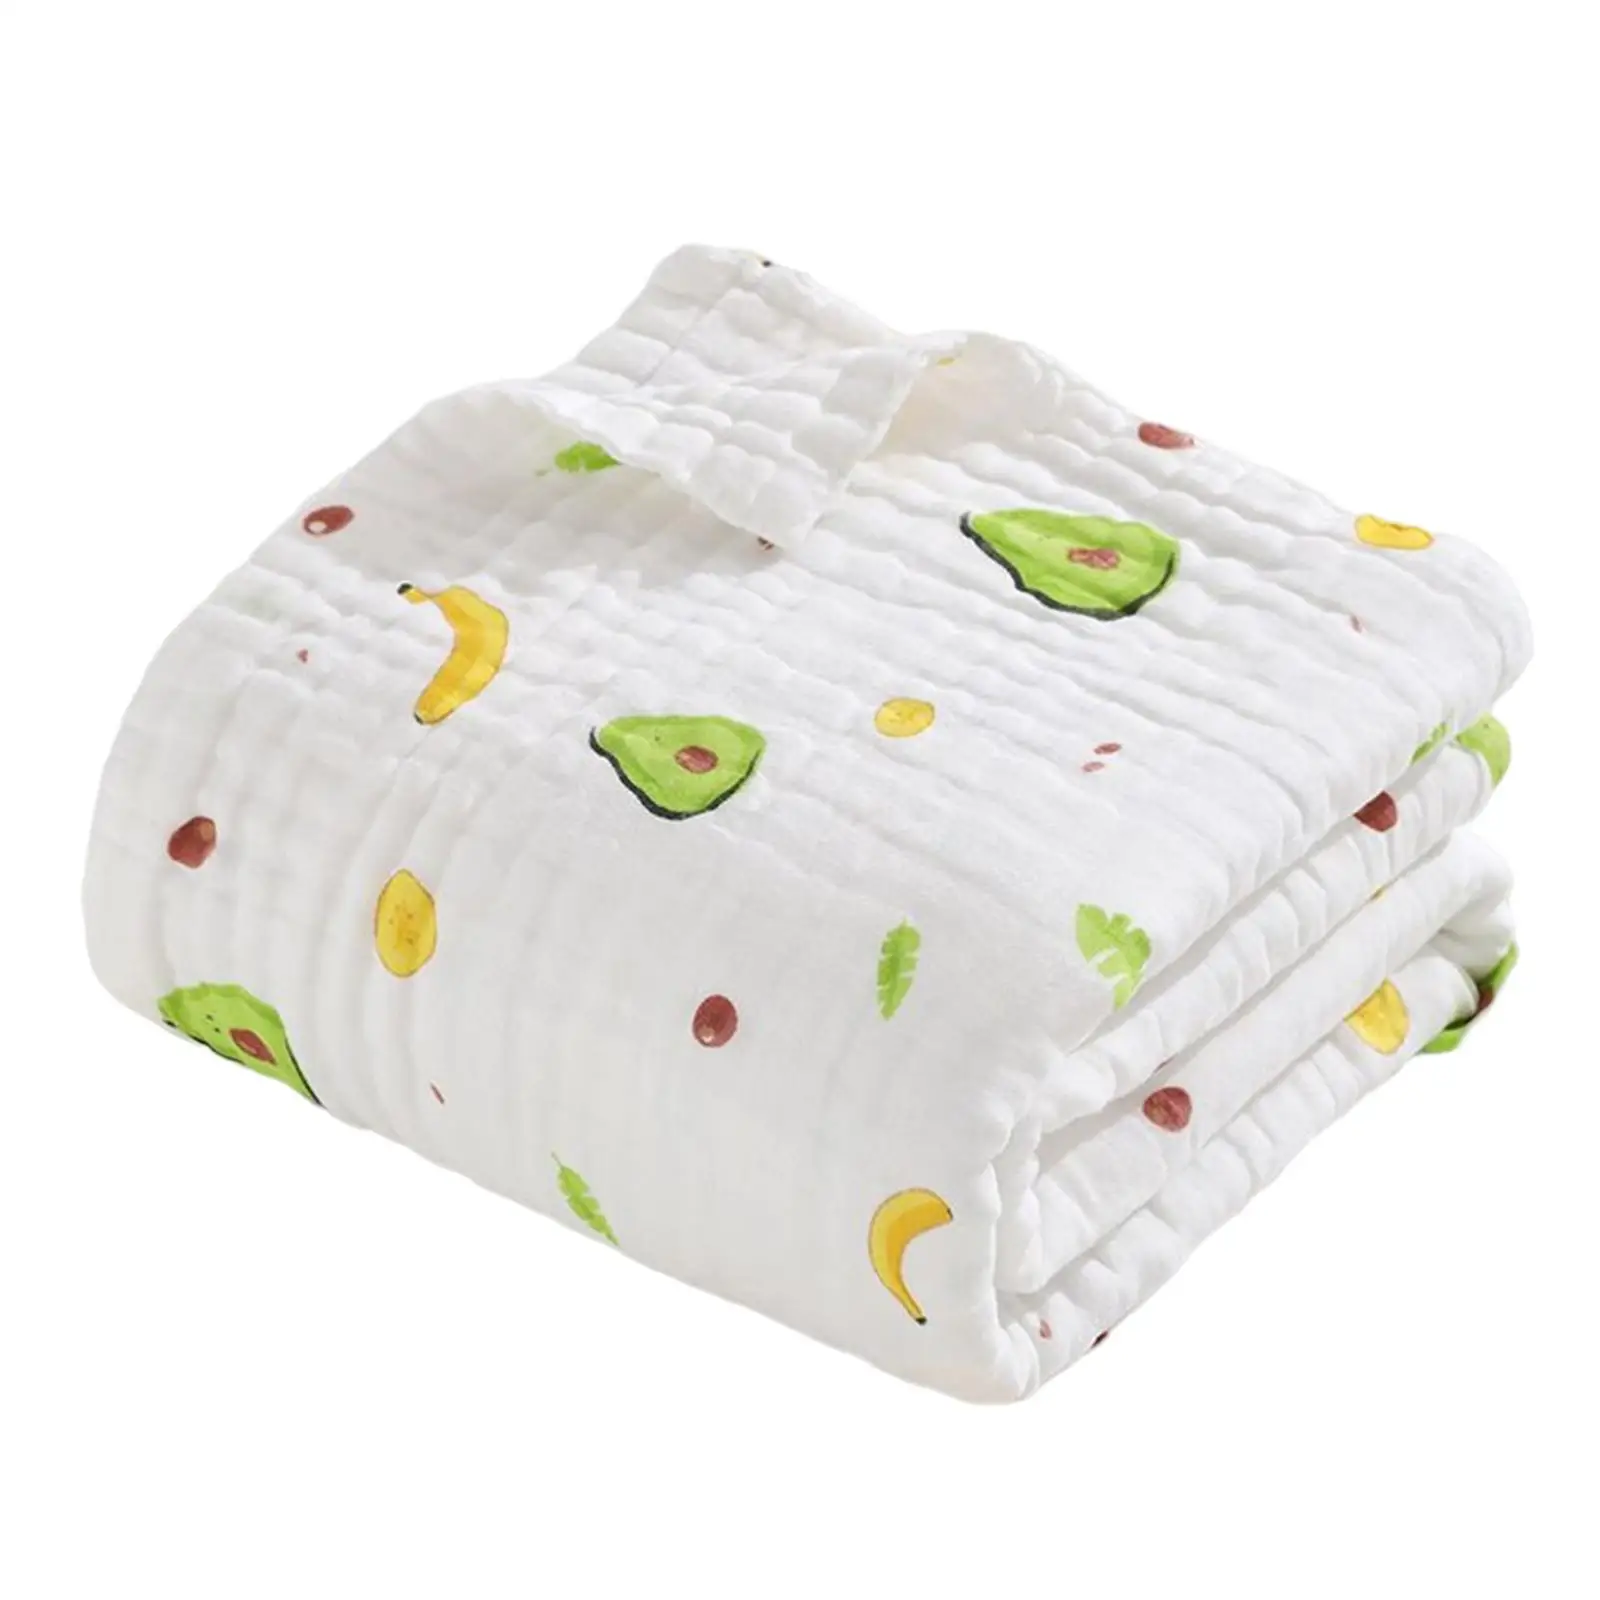 bath Towel Gauze Cotton Bath Sheet Infant Square Super Blanket